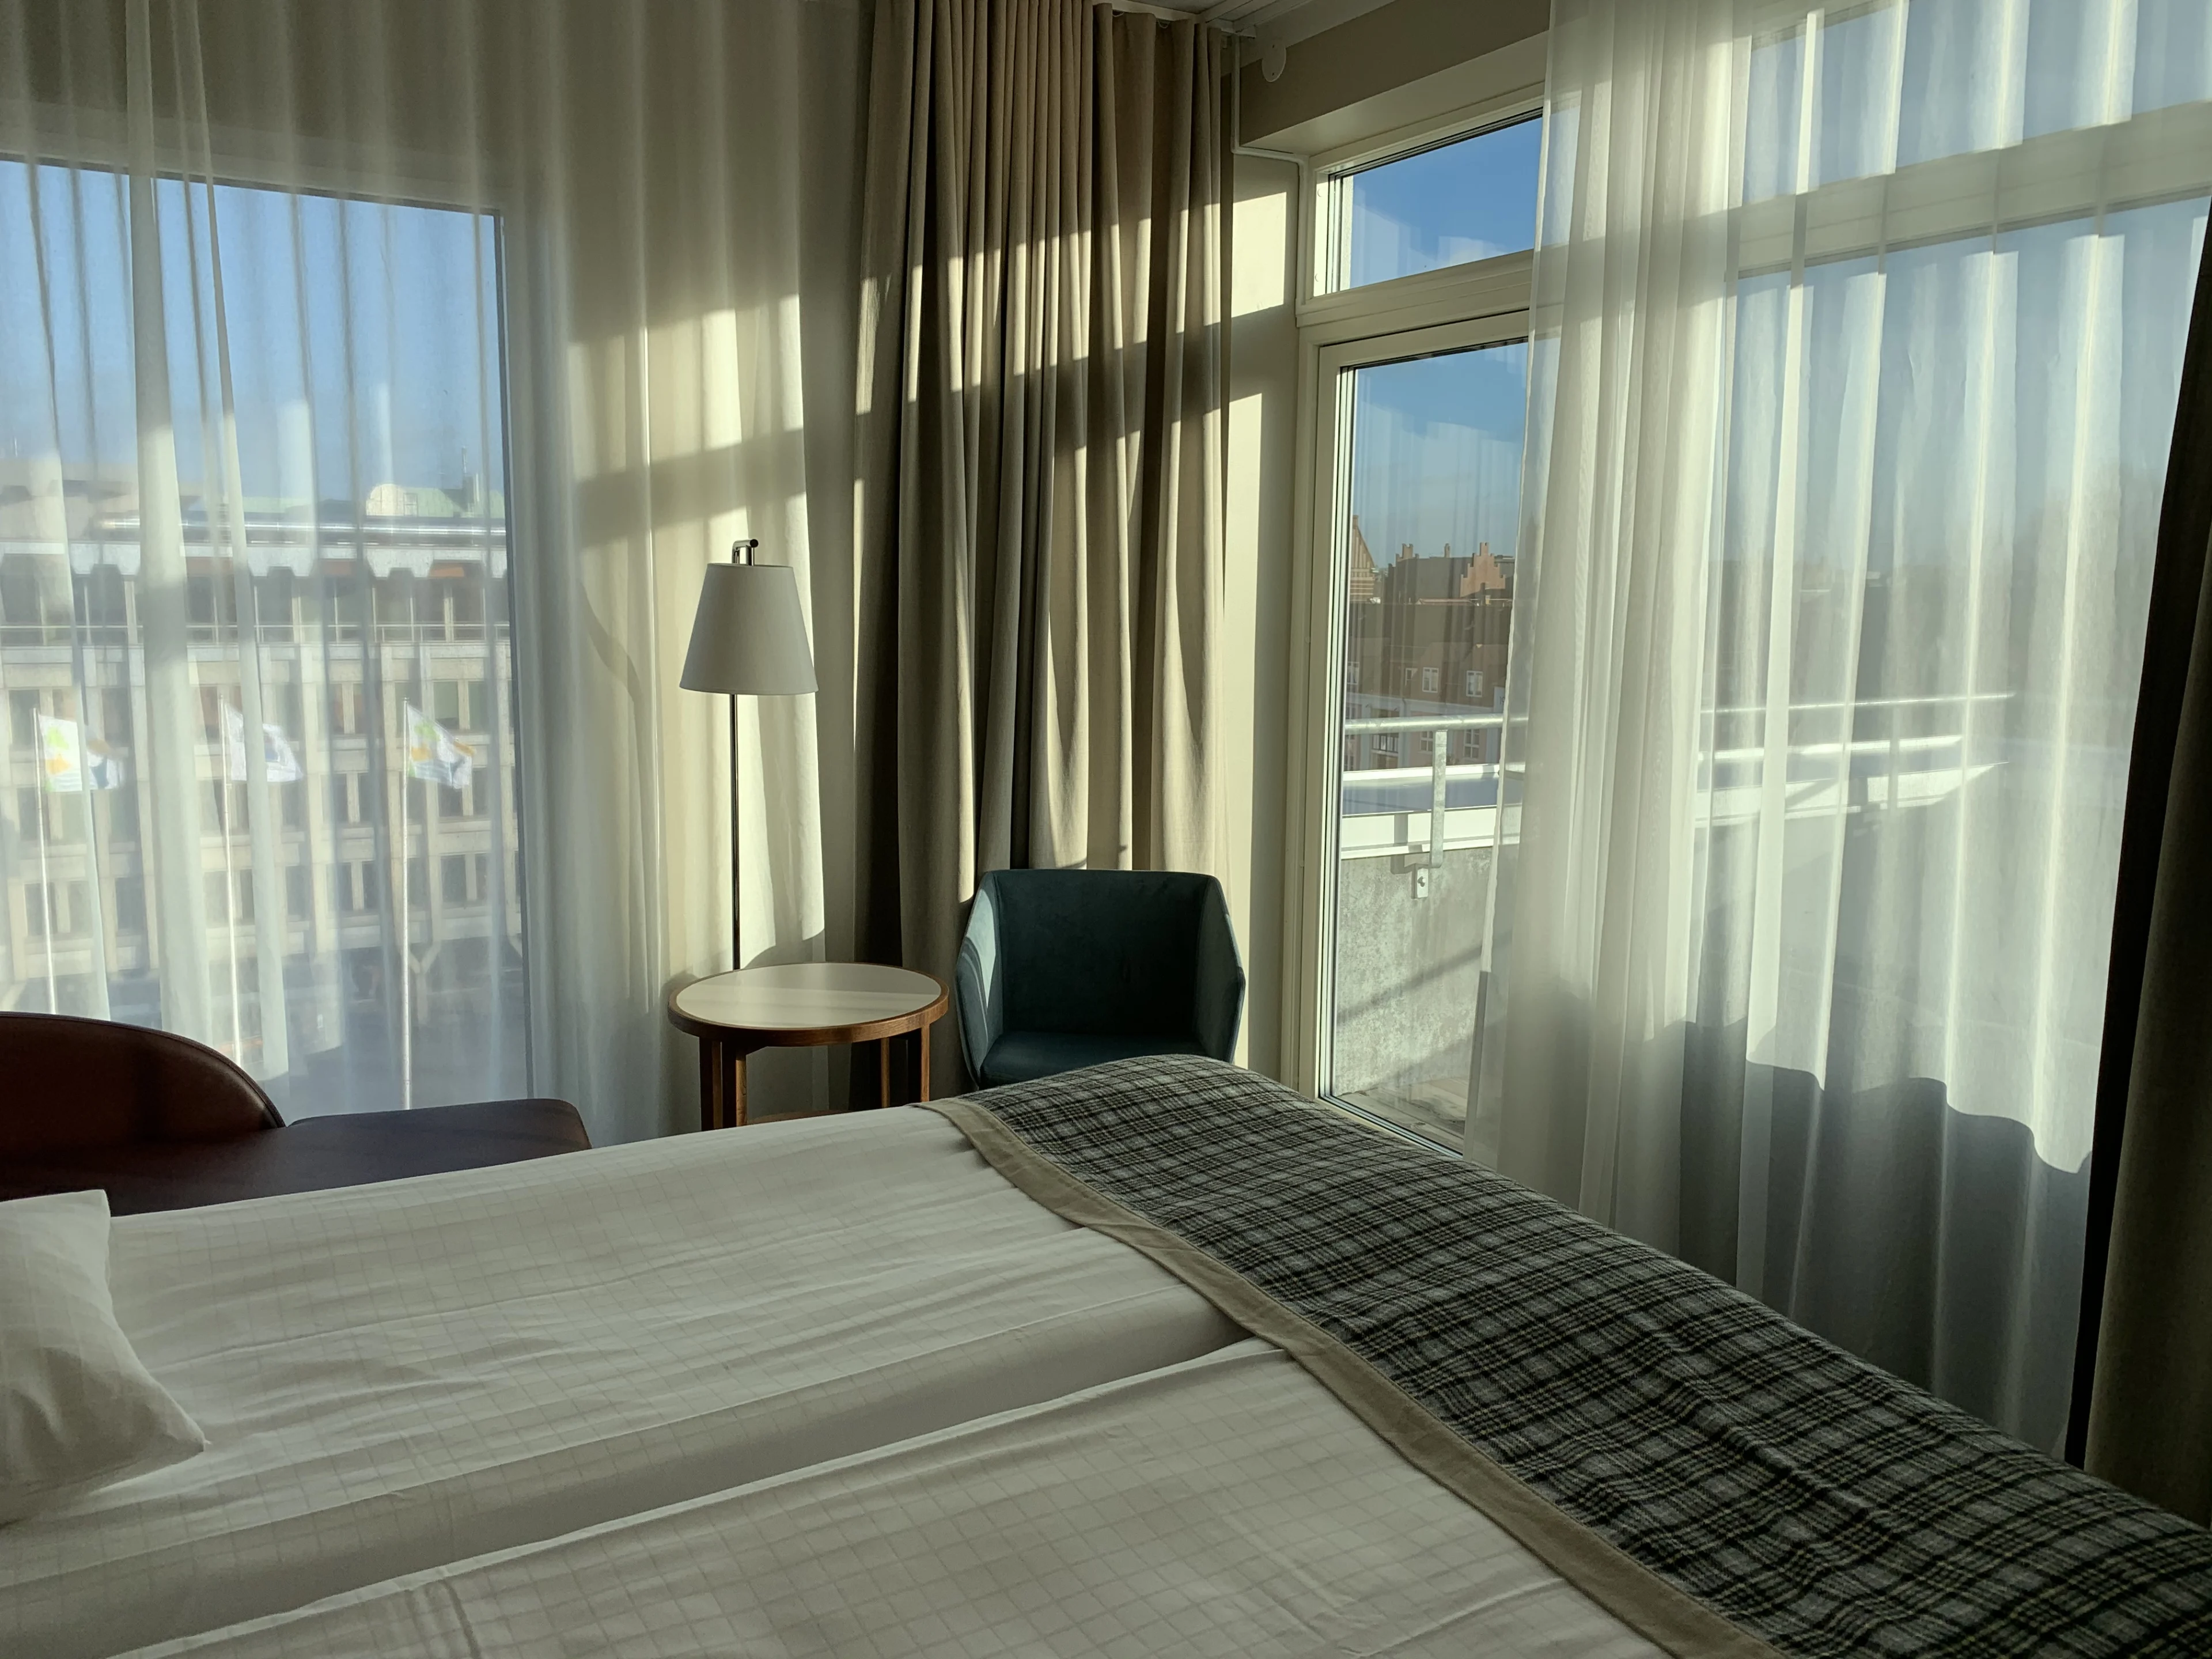 Hyggeligt værelse på Hotel Öresund med fin udsigt og store vinduer. Her får du god rabat med CLUB Øresund...